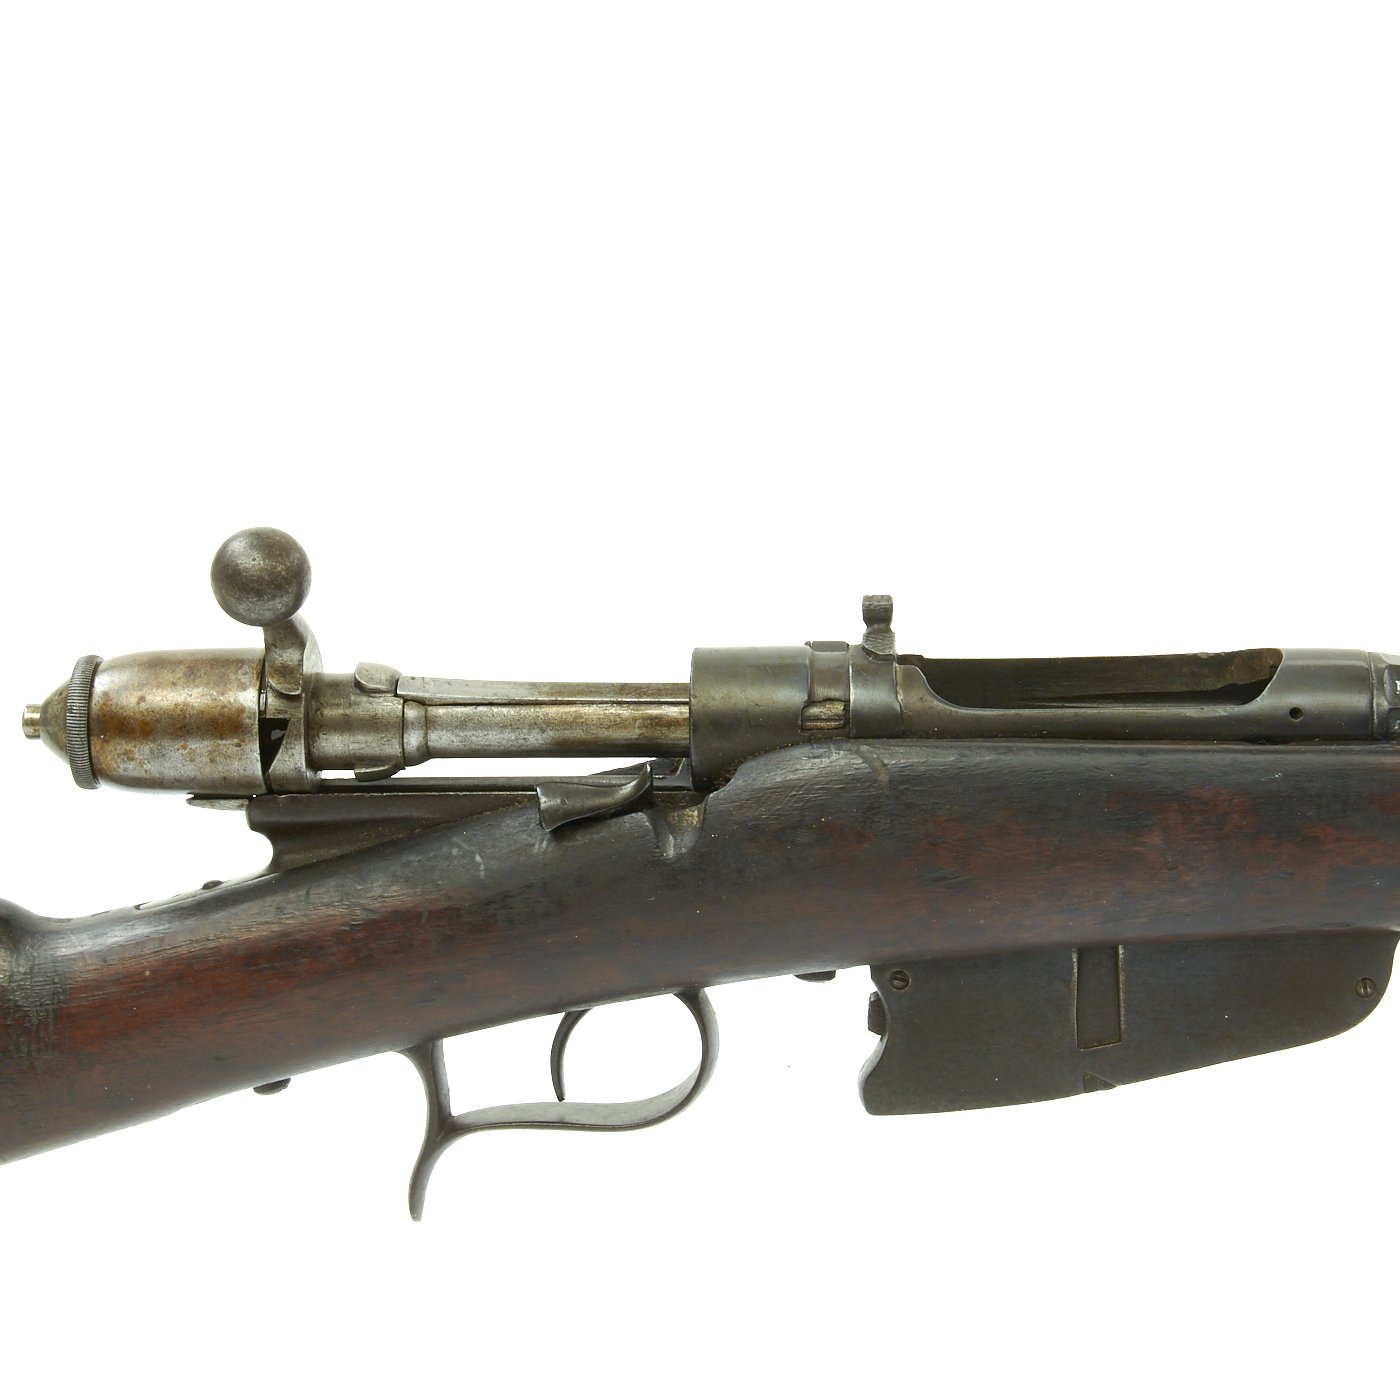 Original Italian Vetterli M1870/87/15 Infantry Rifle made in